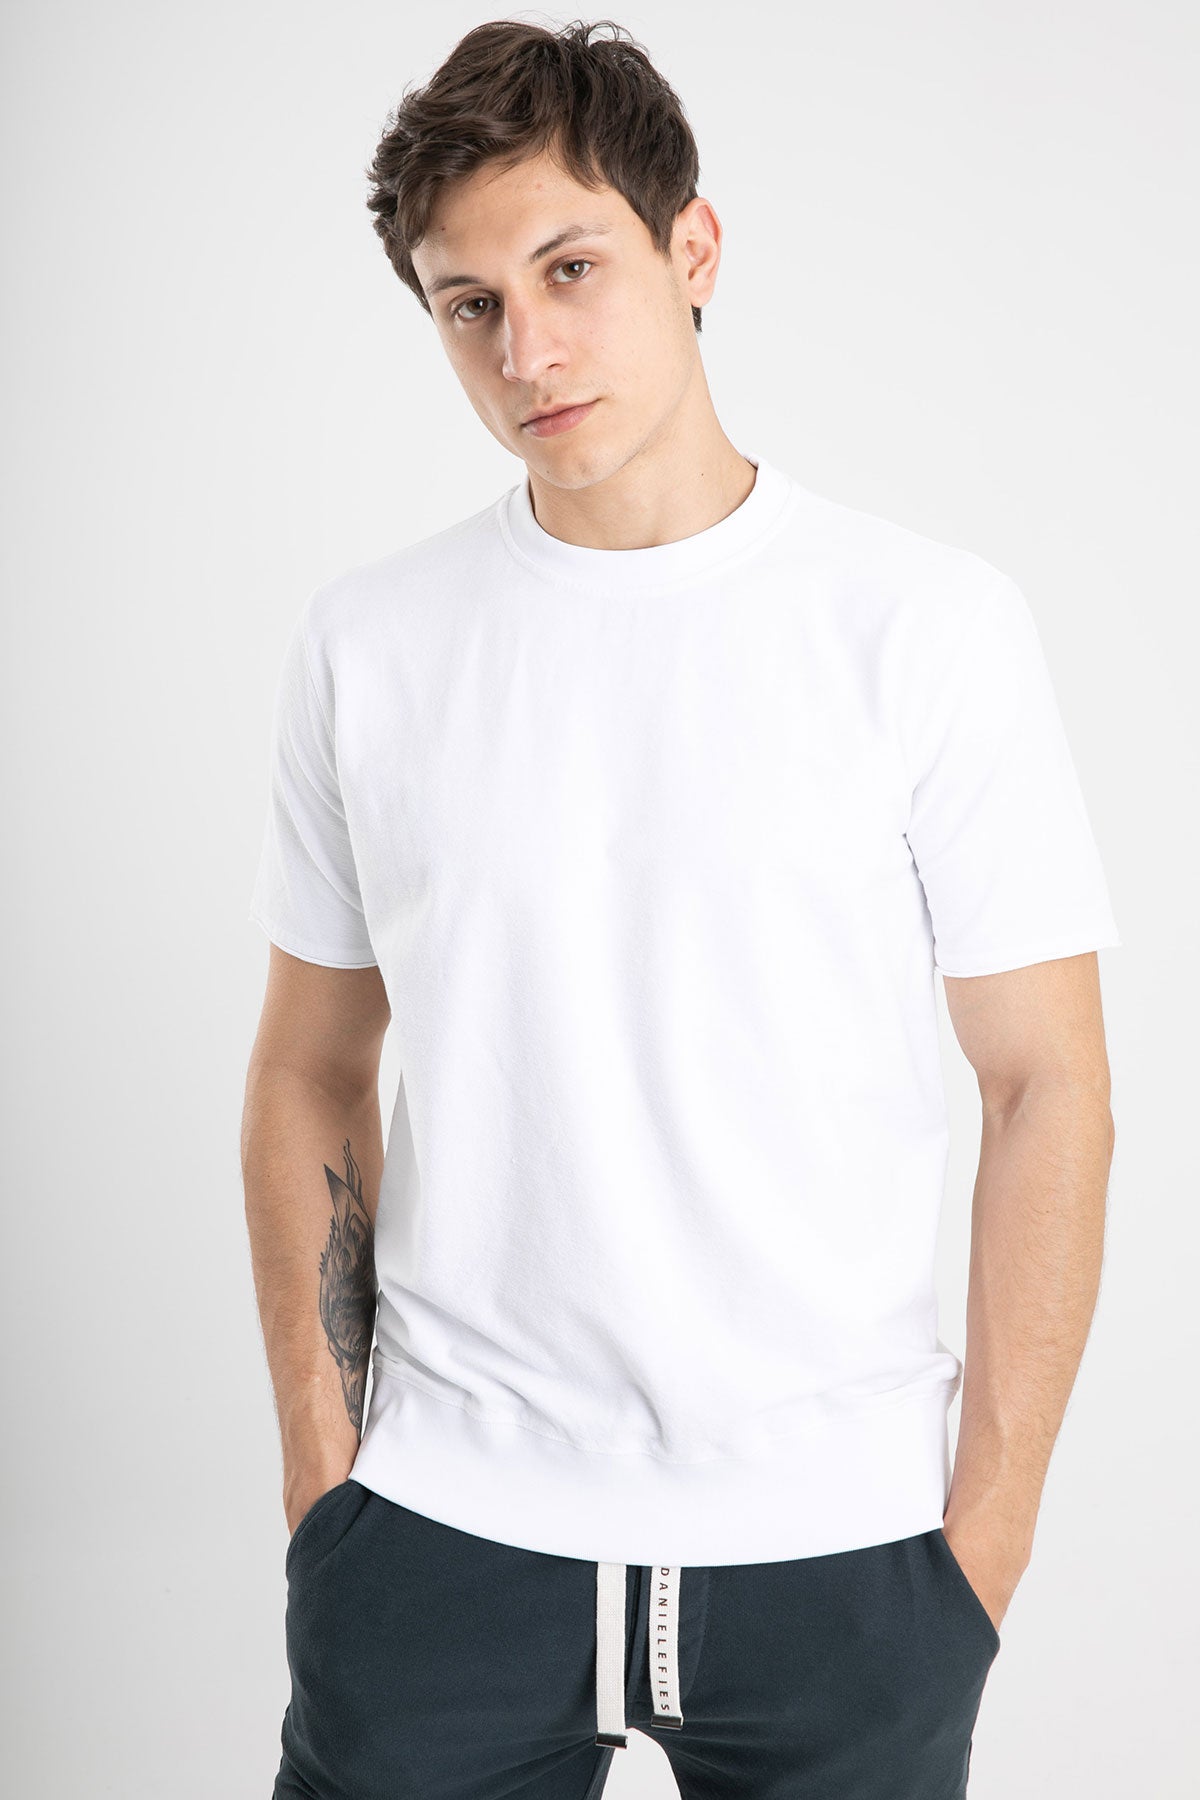 Manifattura Kalın Ribanalı Geniş Kesim T-shirt-Libas Trendy Fashion Store